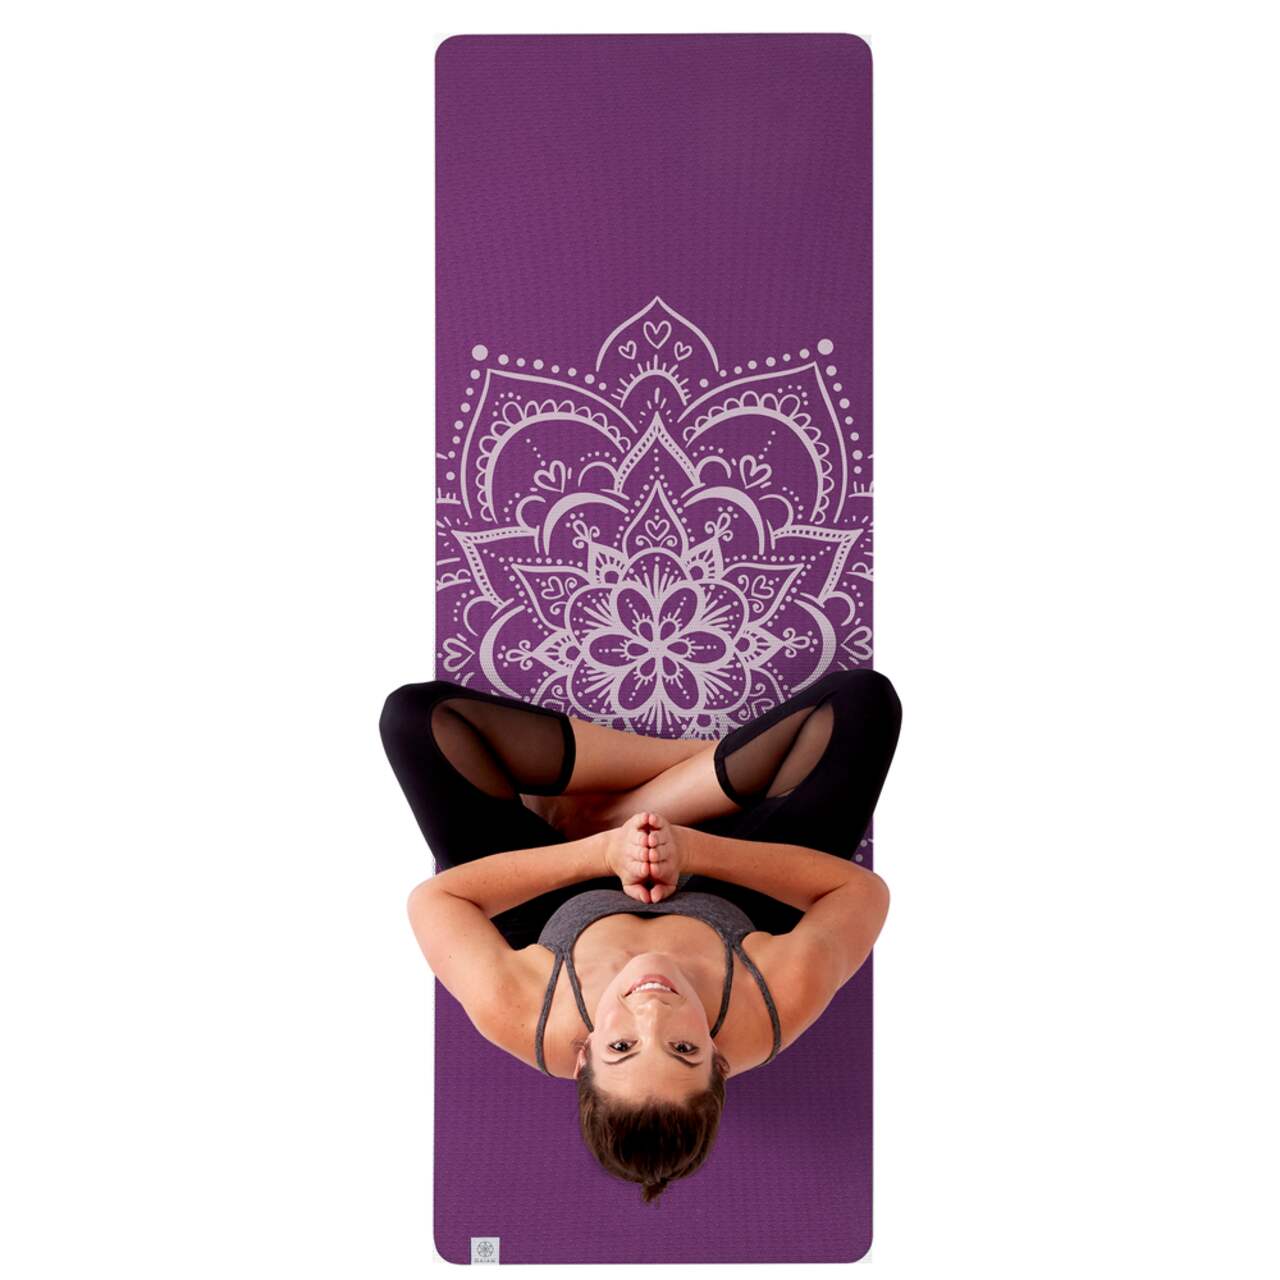 GAIAM 6 mm TPE Yoga Mat Lake Performance - Yoga mat, Buy online